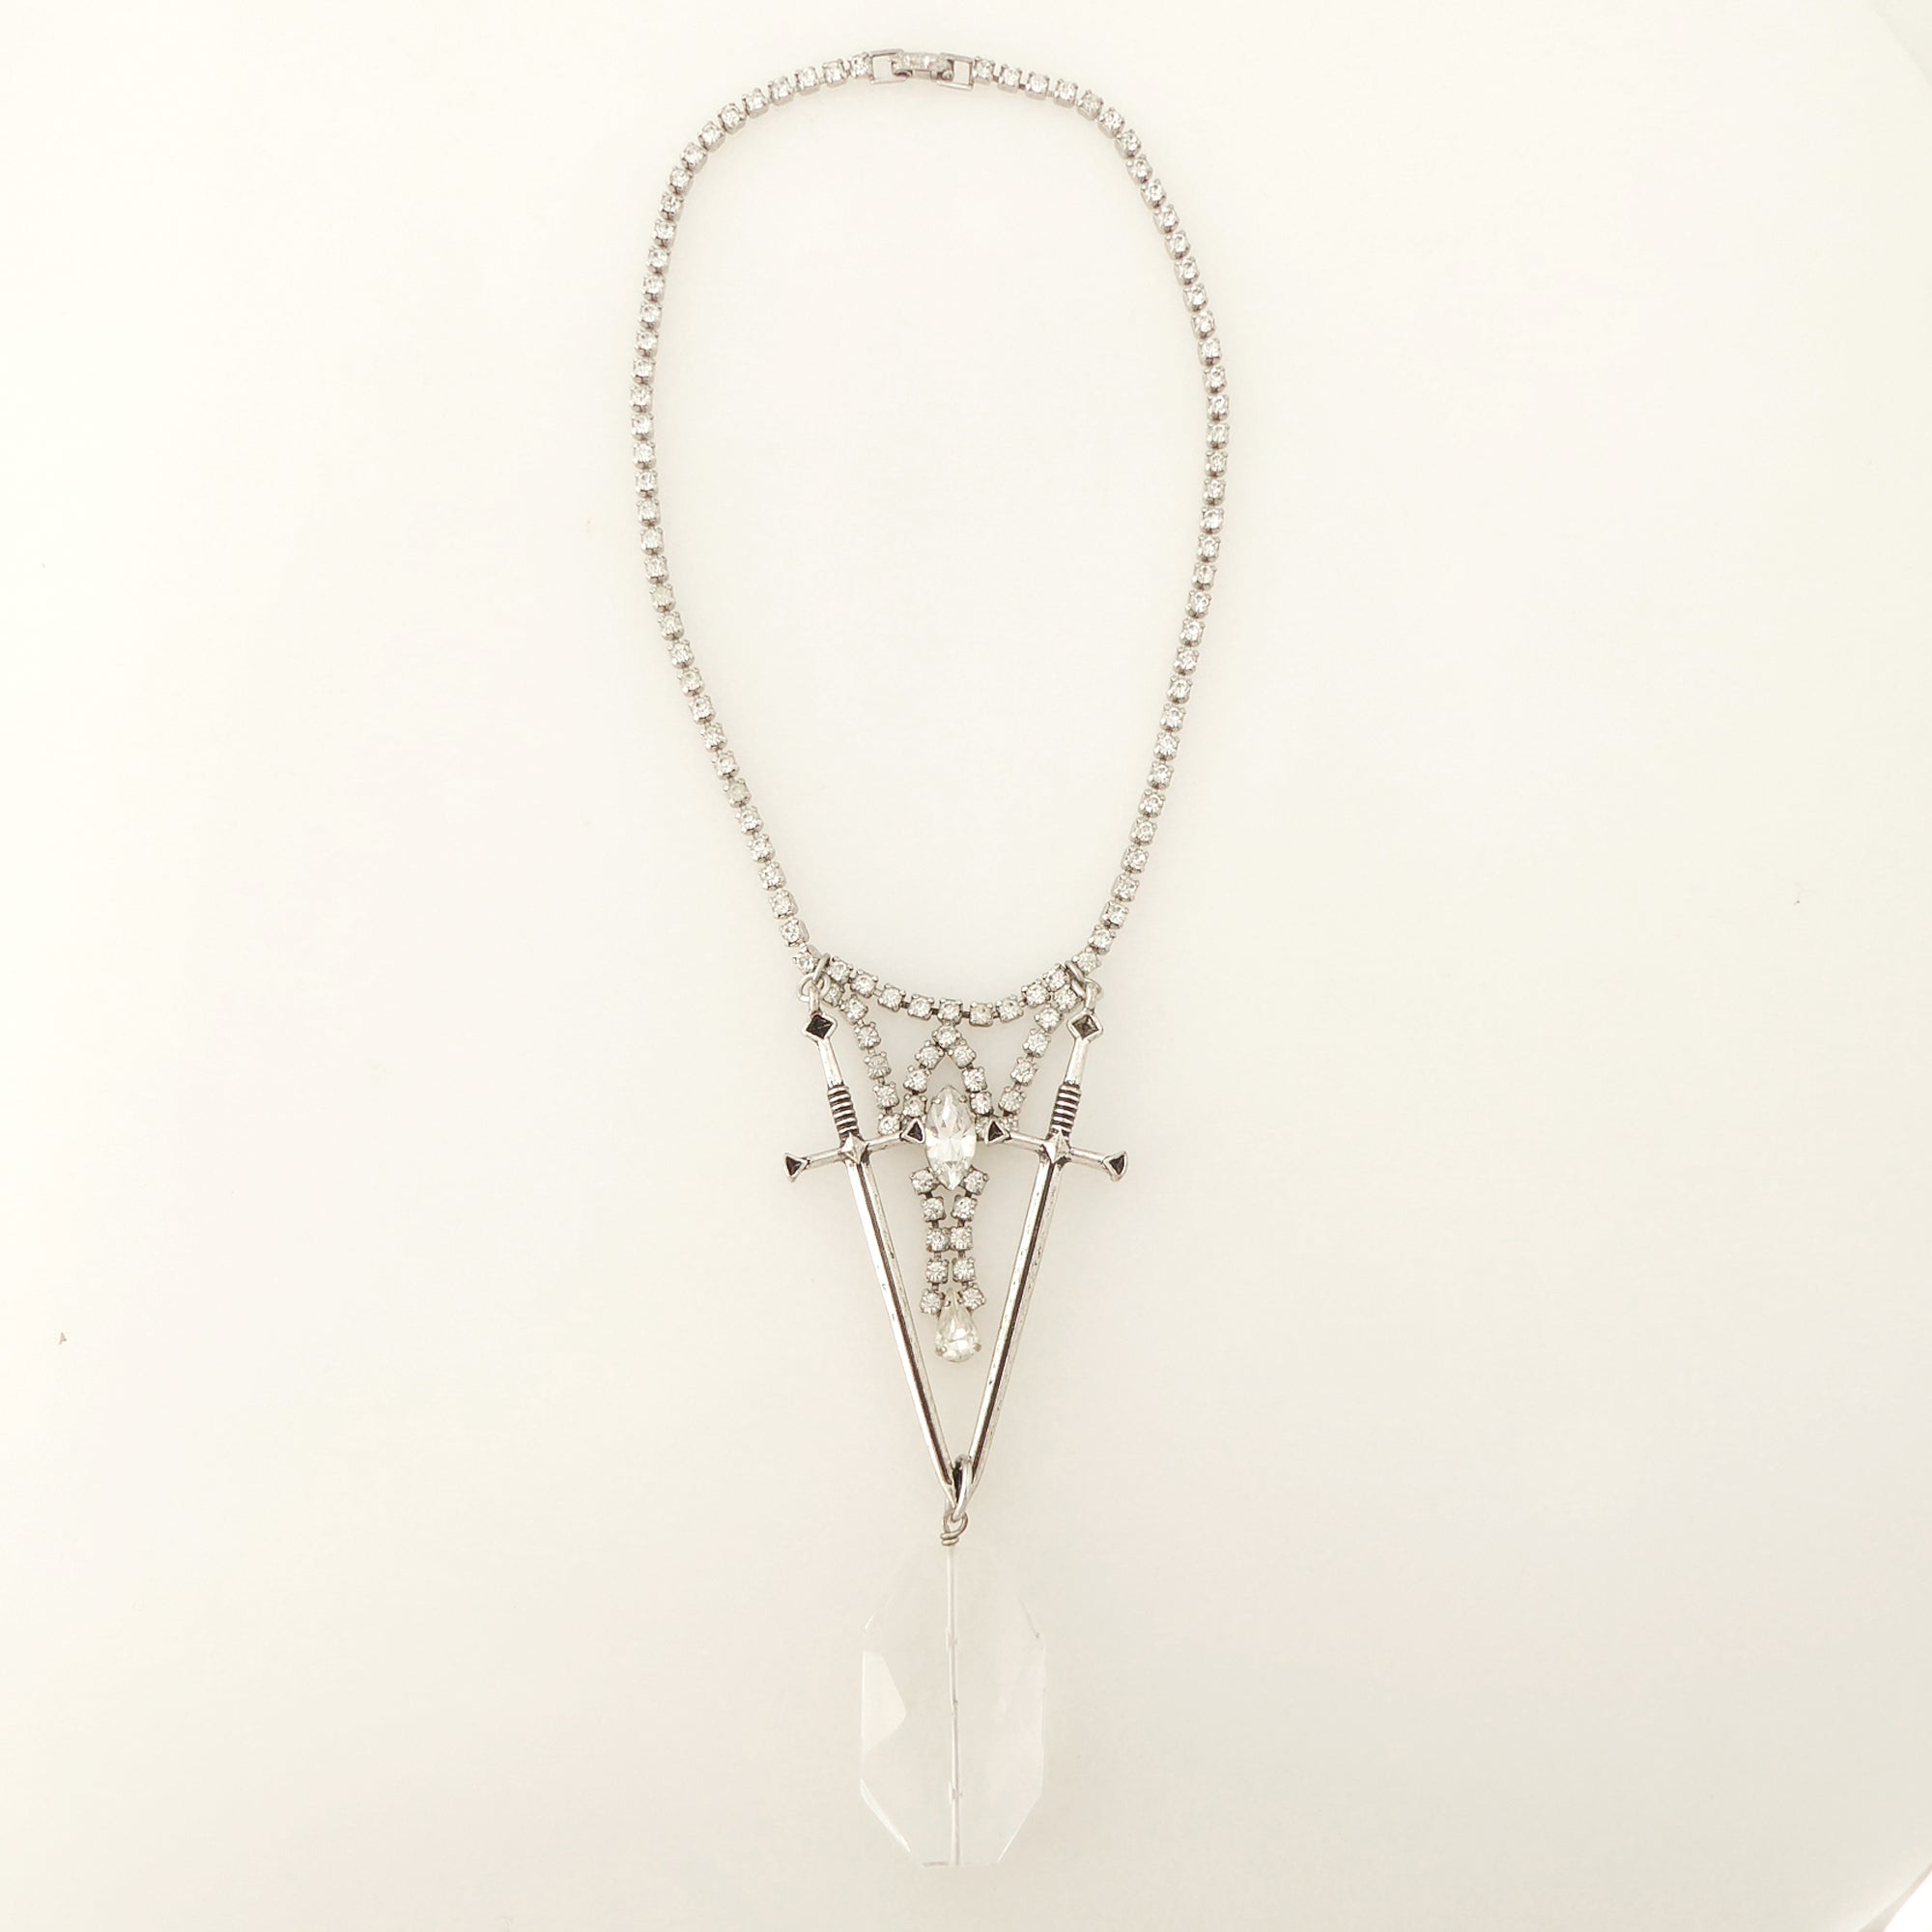 Dual sword quartz necklace by Jenny Dayco 6